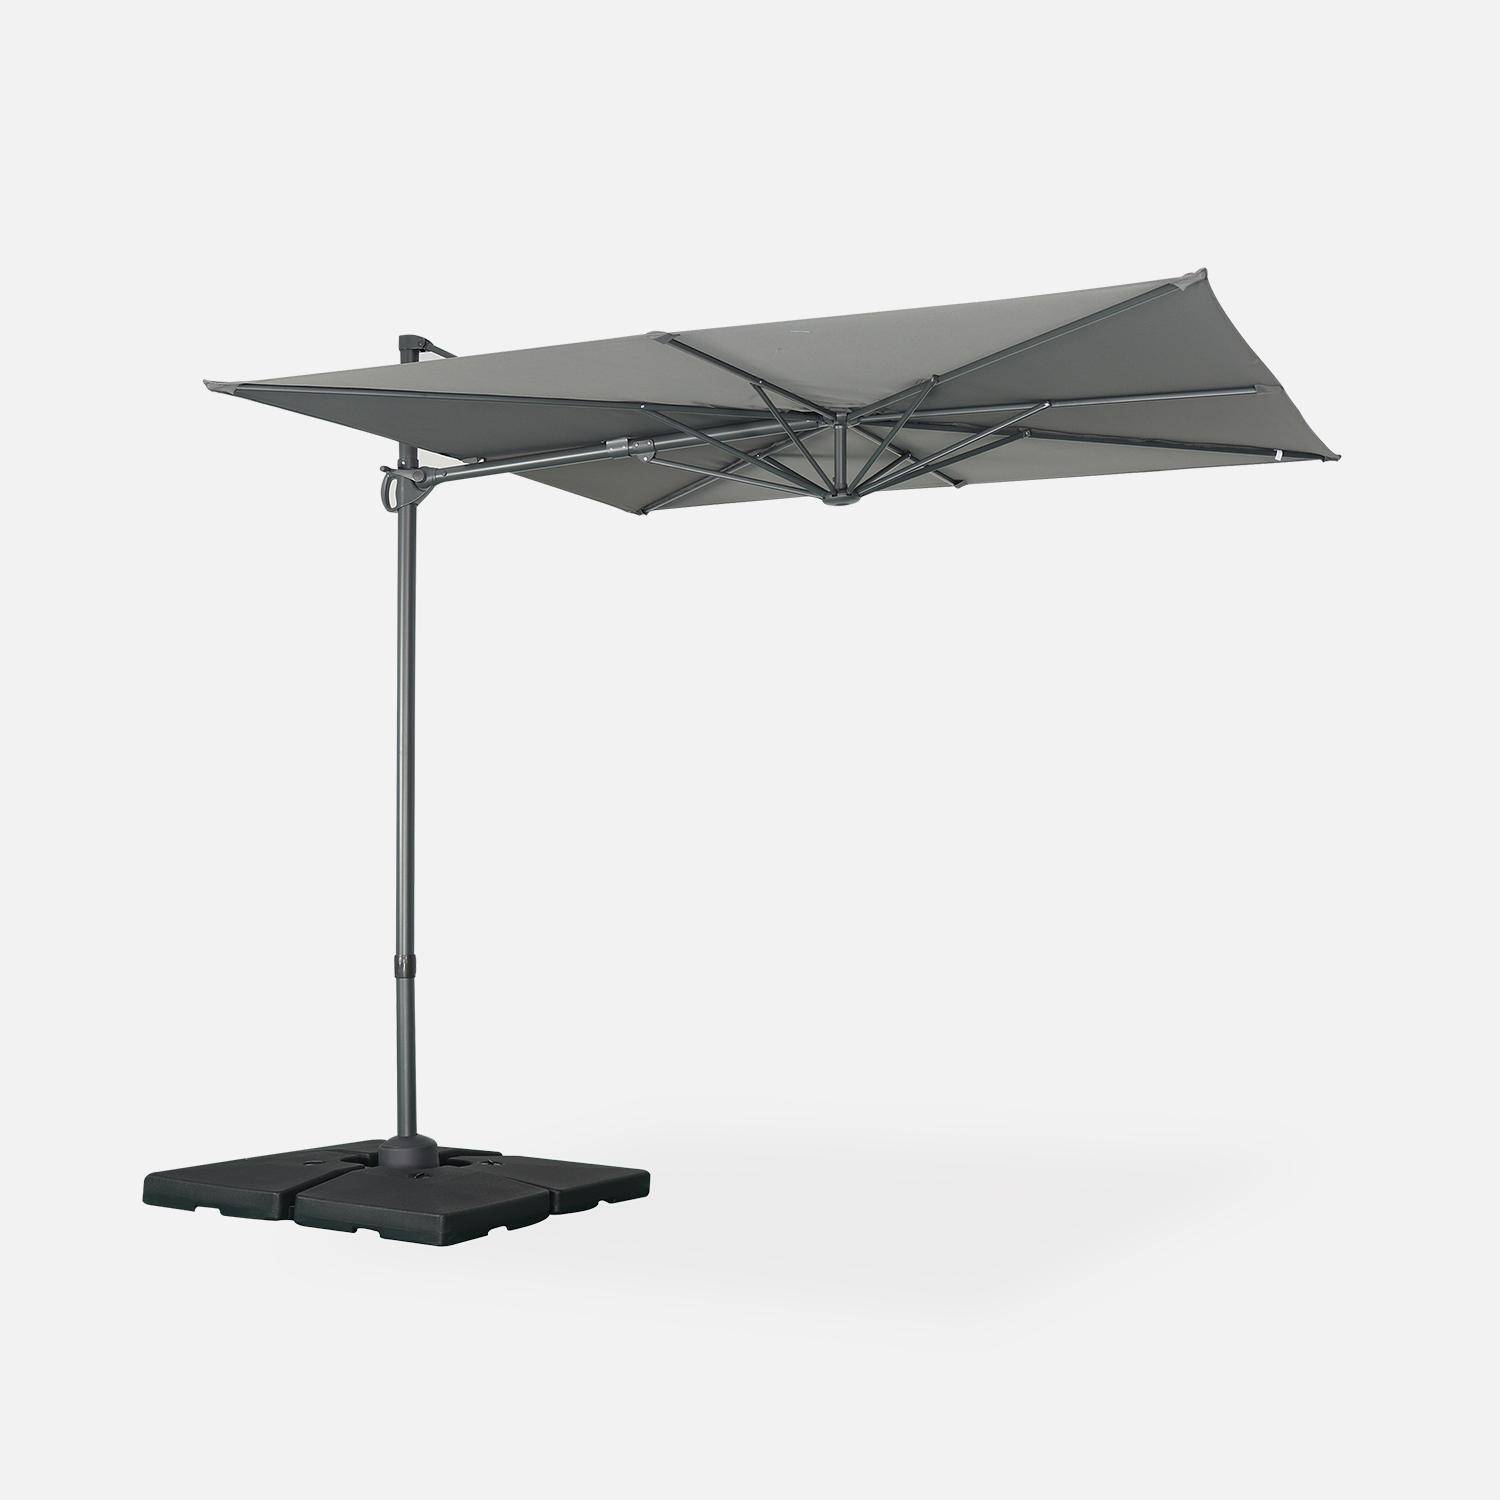 Parasol déporté carré 250 x 250 cm – Andernos – gris – parasol exporté, inclinable, rabattable et rotatif à 360° Photo1